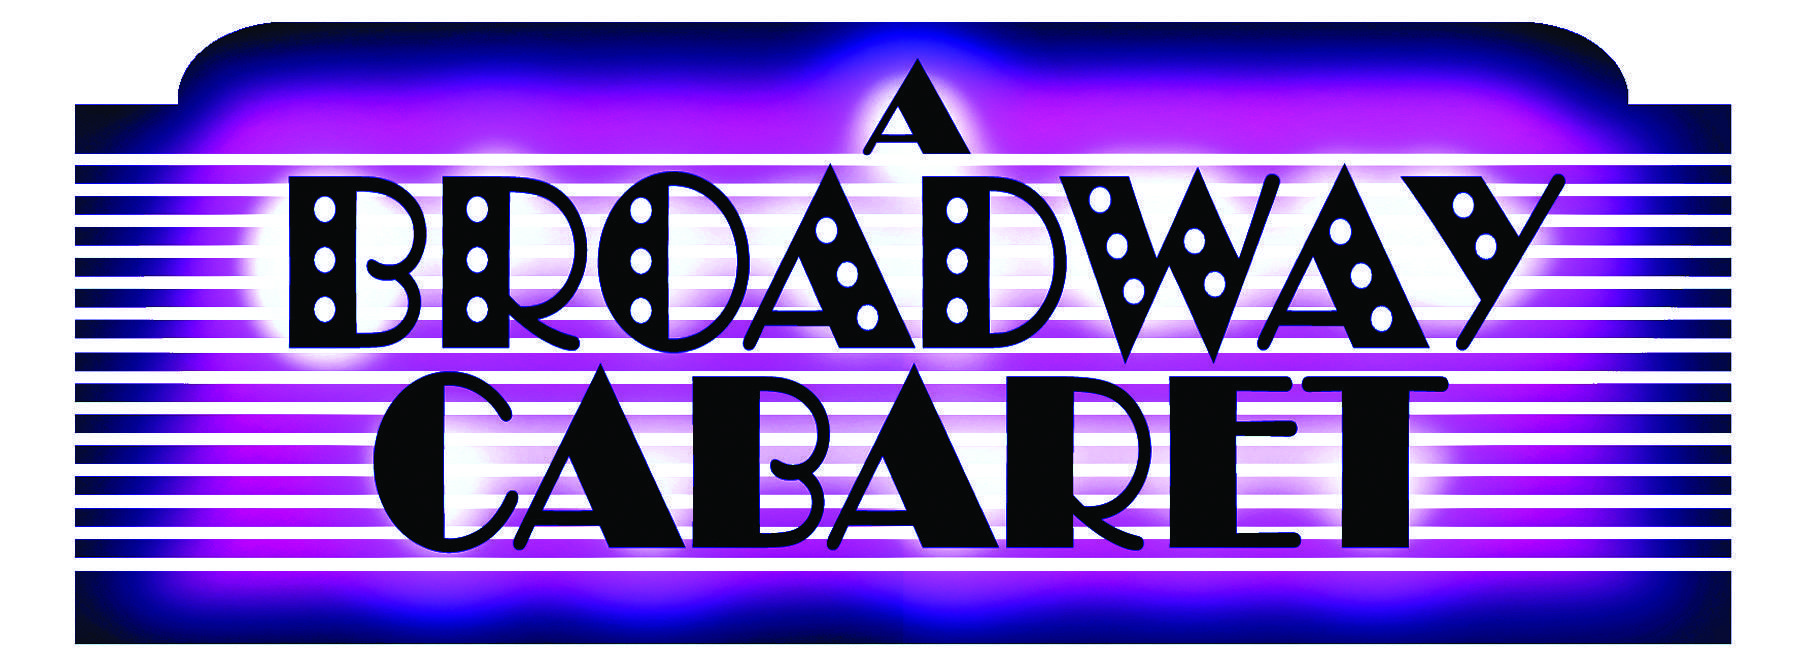 Cabaret Logo - A BROADWAY CABARET LOGO PURPLE CMYK | Pacific Sun | Marin County ...